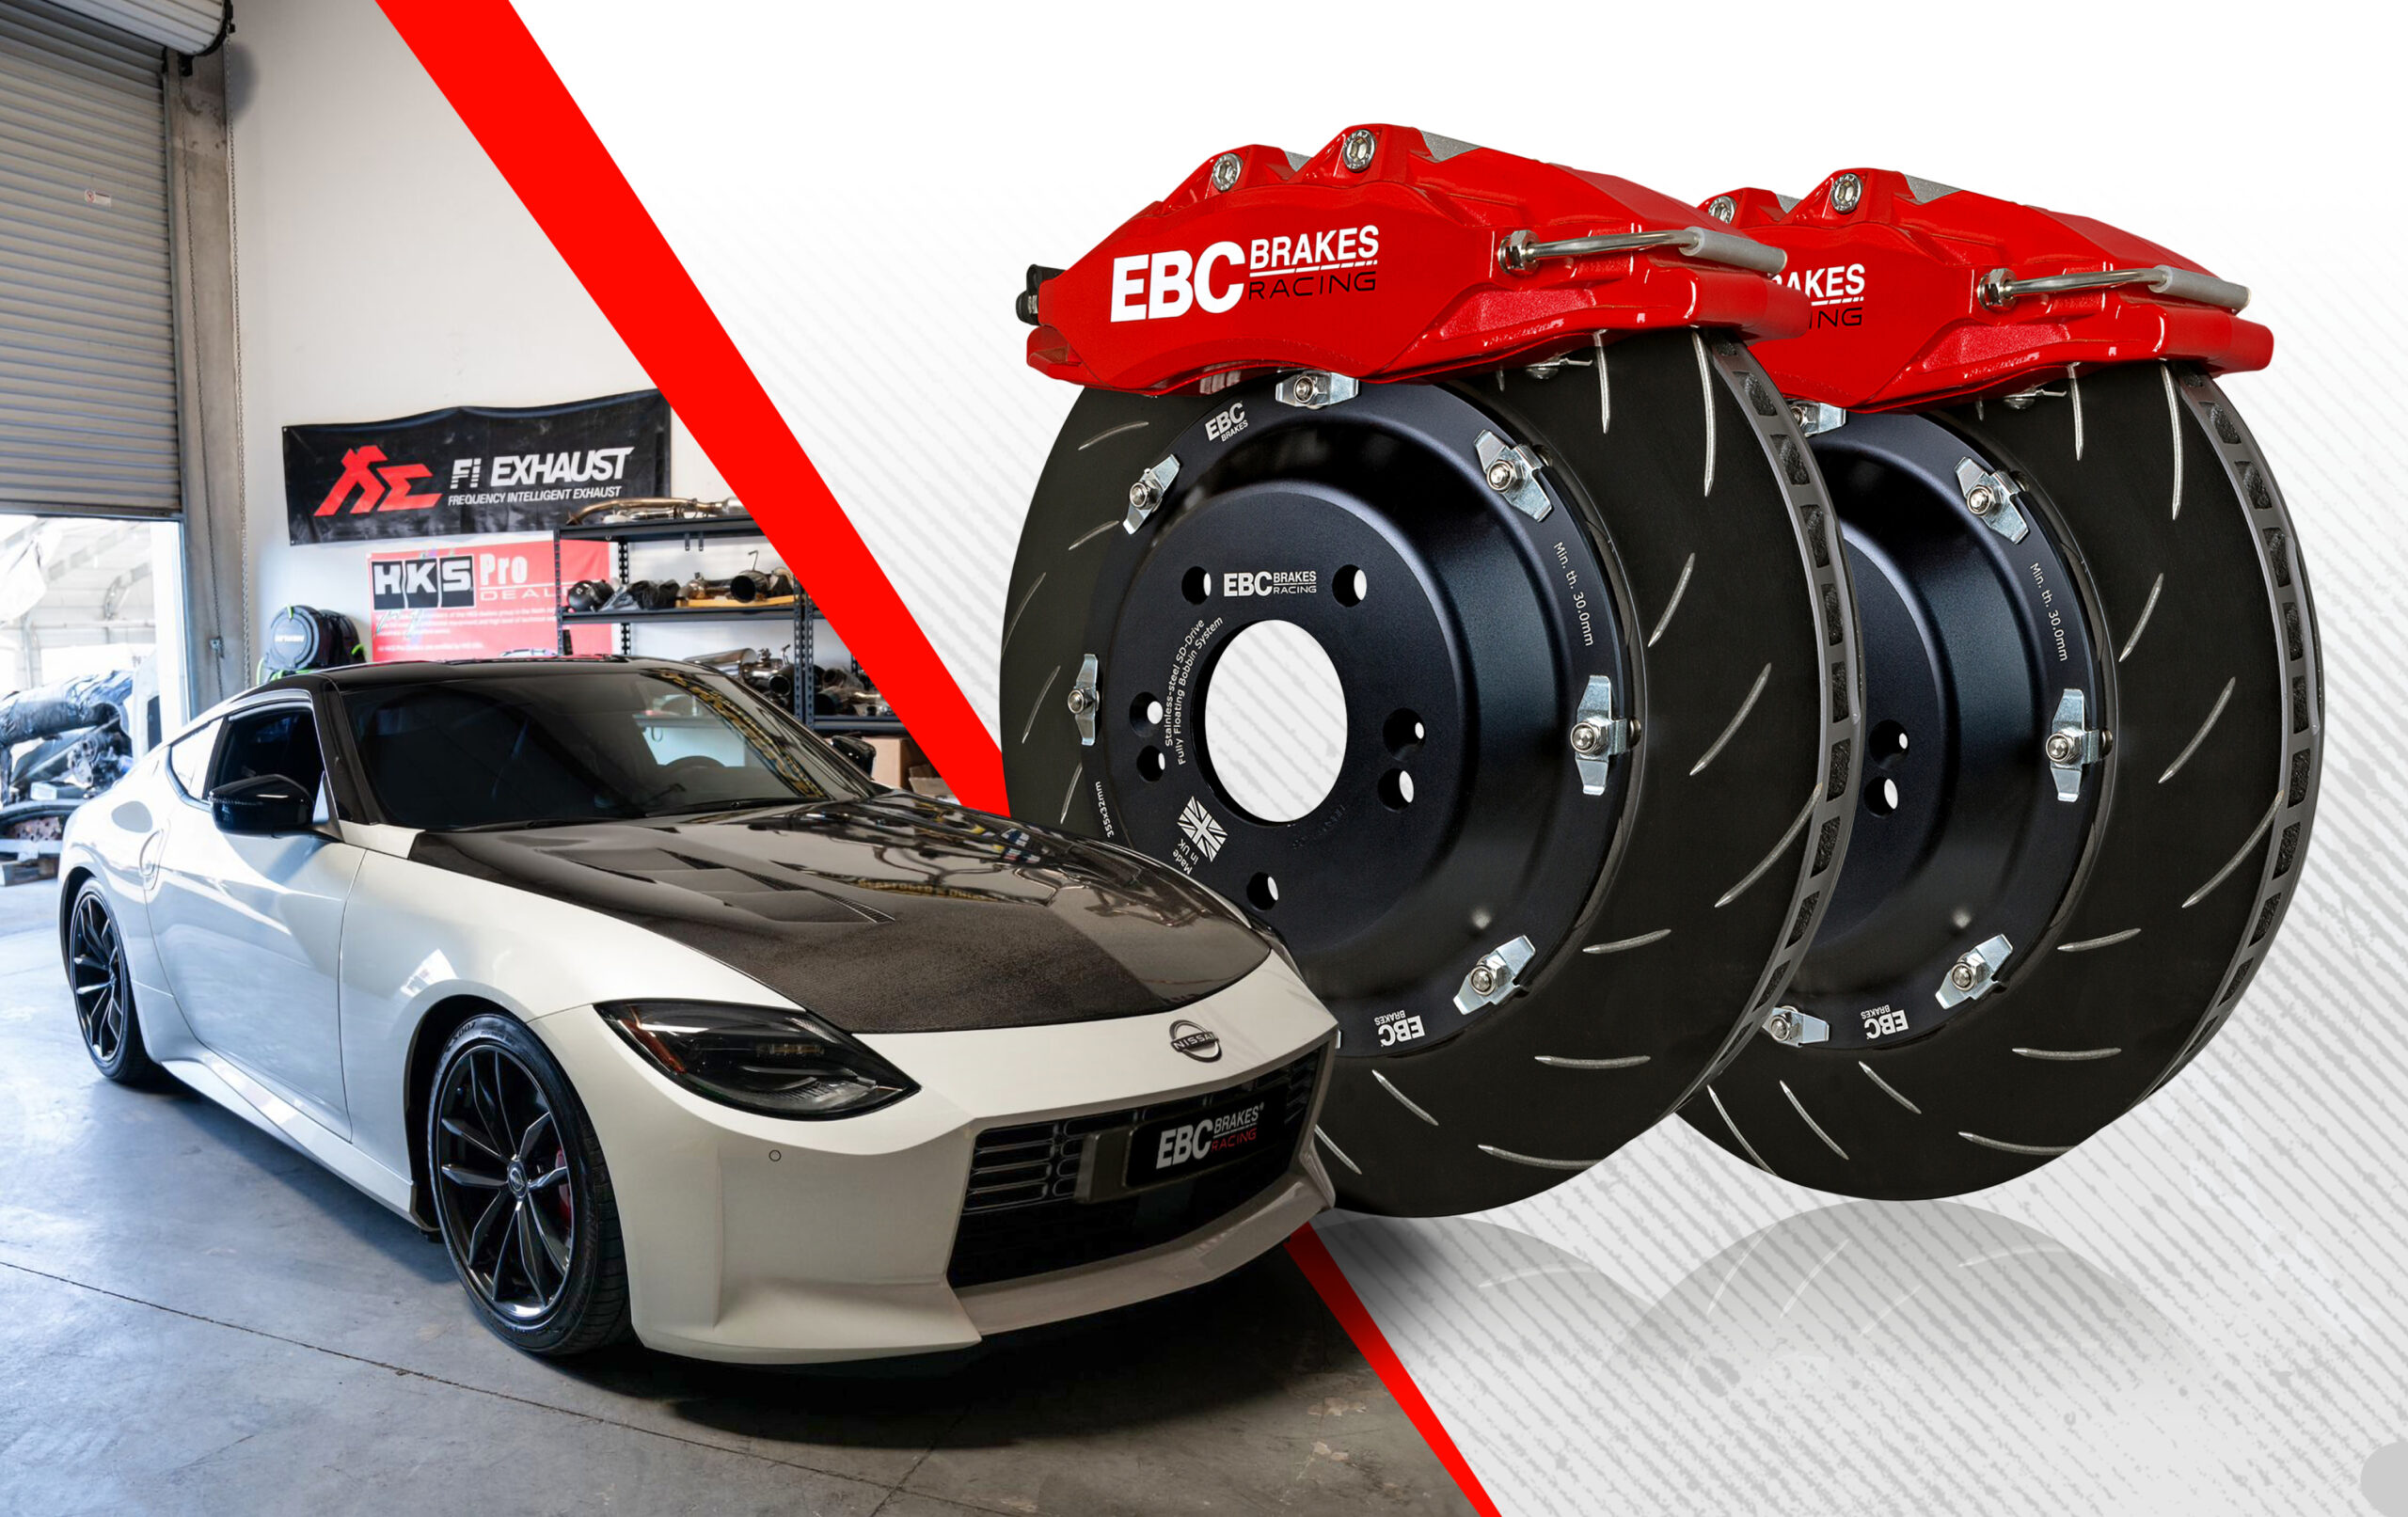 EBC Brakes Racing 6-Piston Apollo Big Brake Kits Now Available for Nissan Z